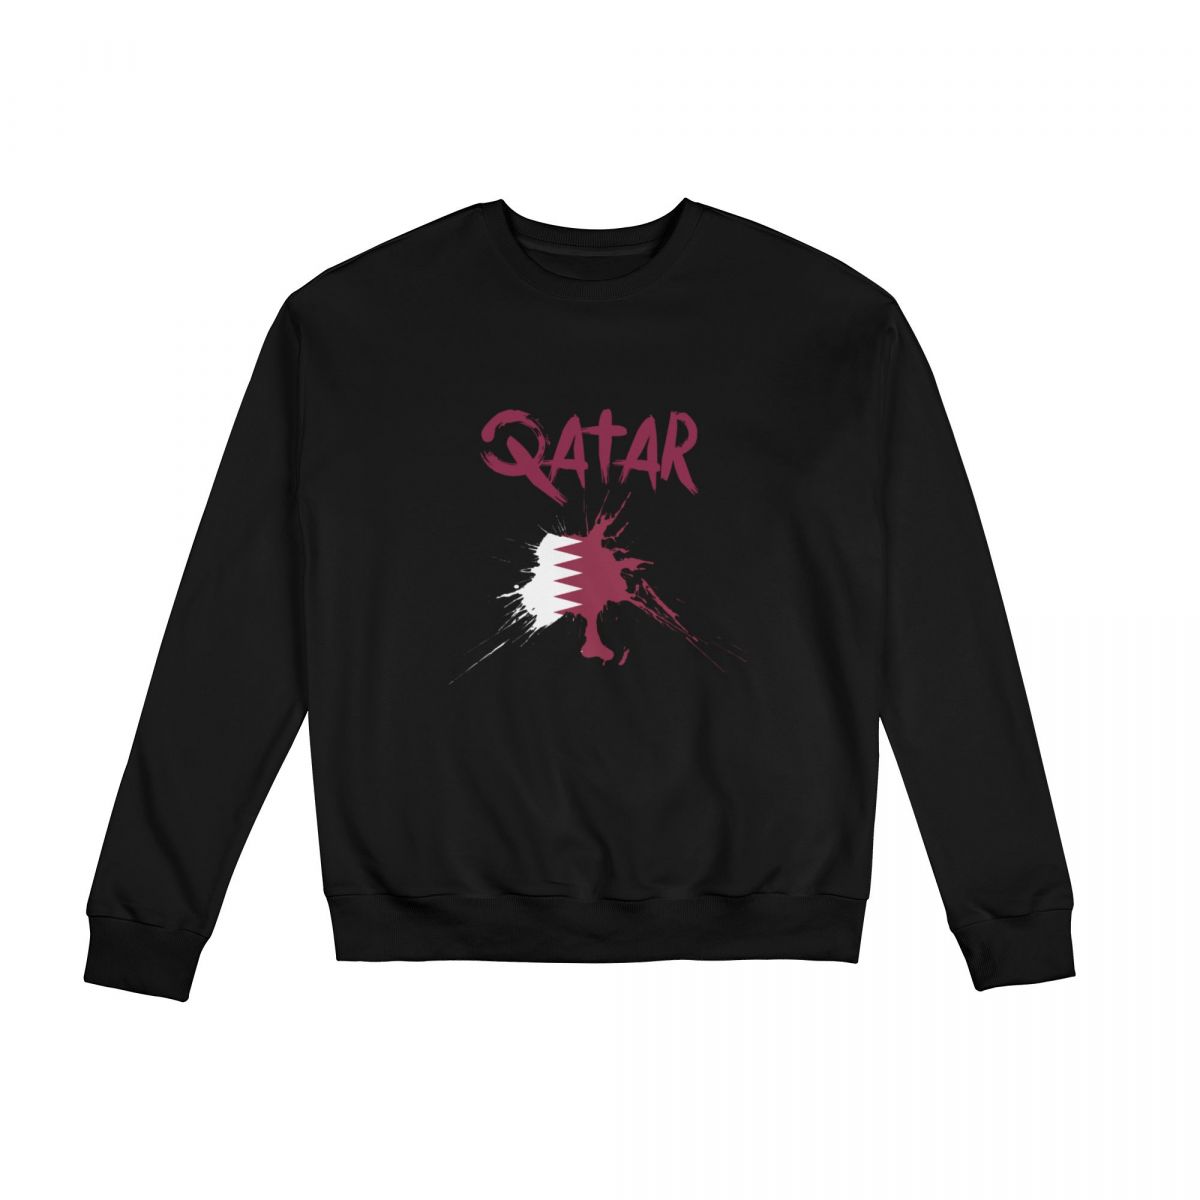 Qatar Ink Spatter Unisex Round Neck Sweatshirt